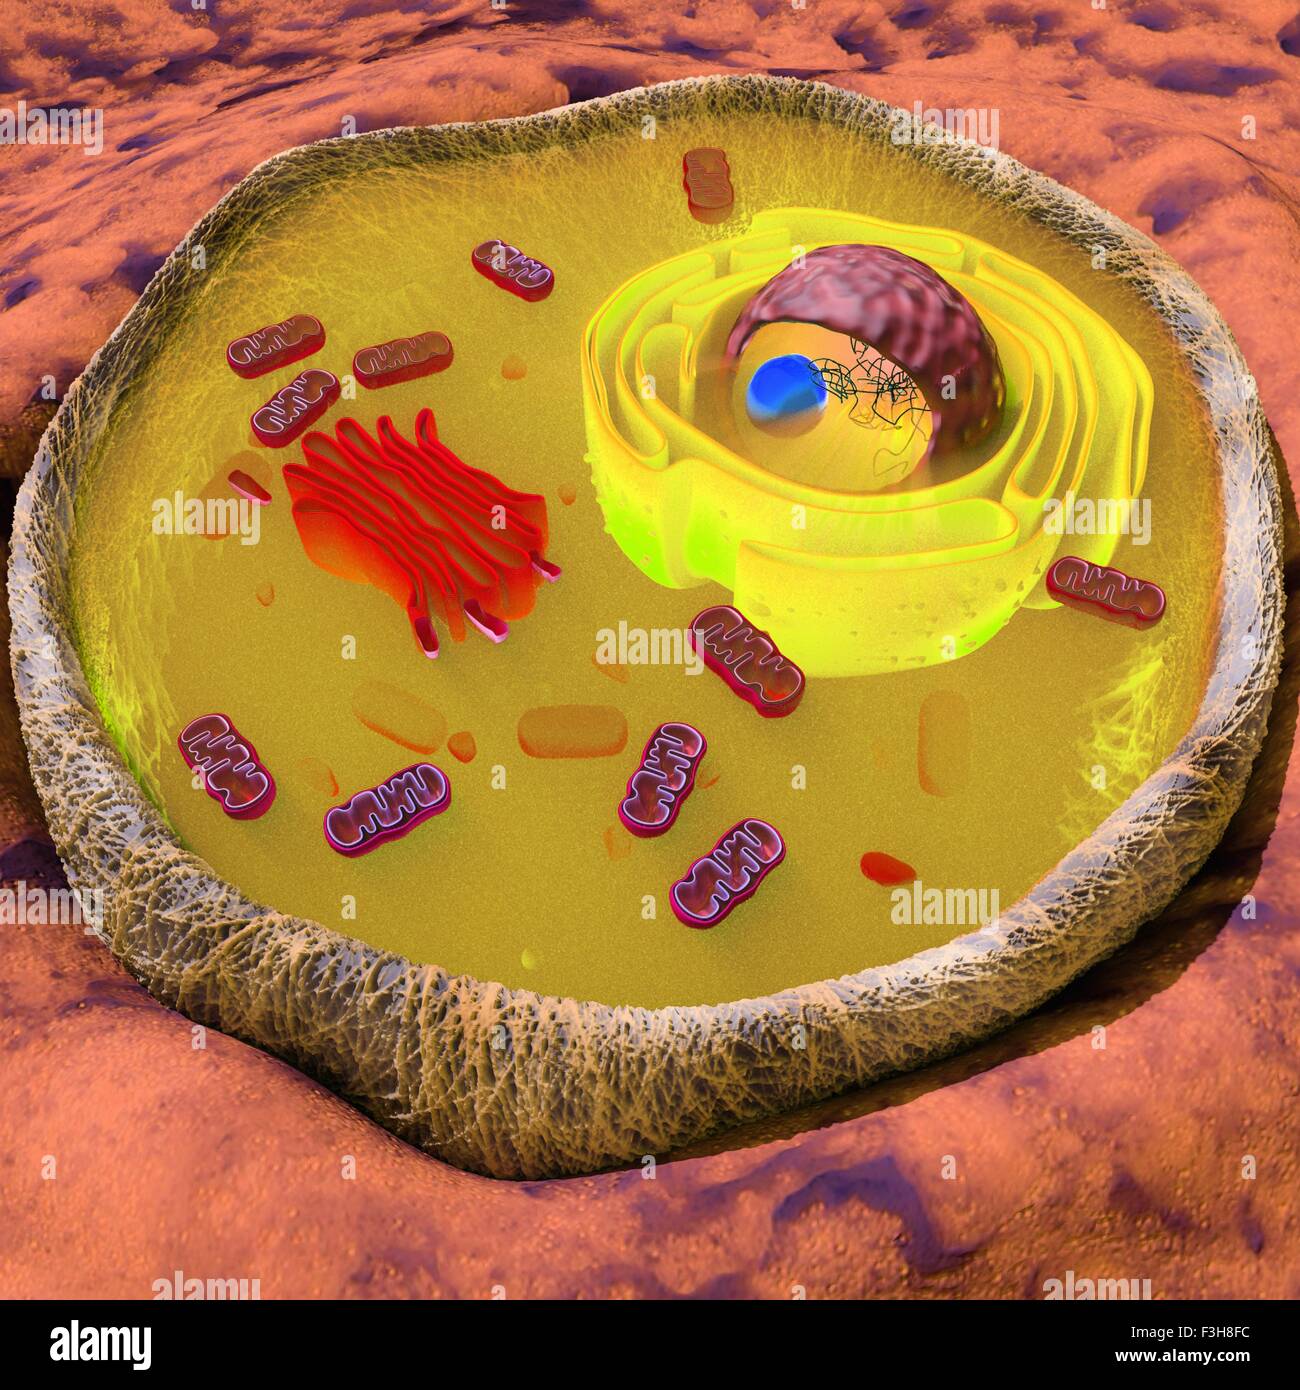 Illustrazione di una cellula eucariotica che mostra i principali organuli come apparato di Golgi, reticolo endoplasmatico, mitocondri, nucleo Foto Stock